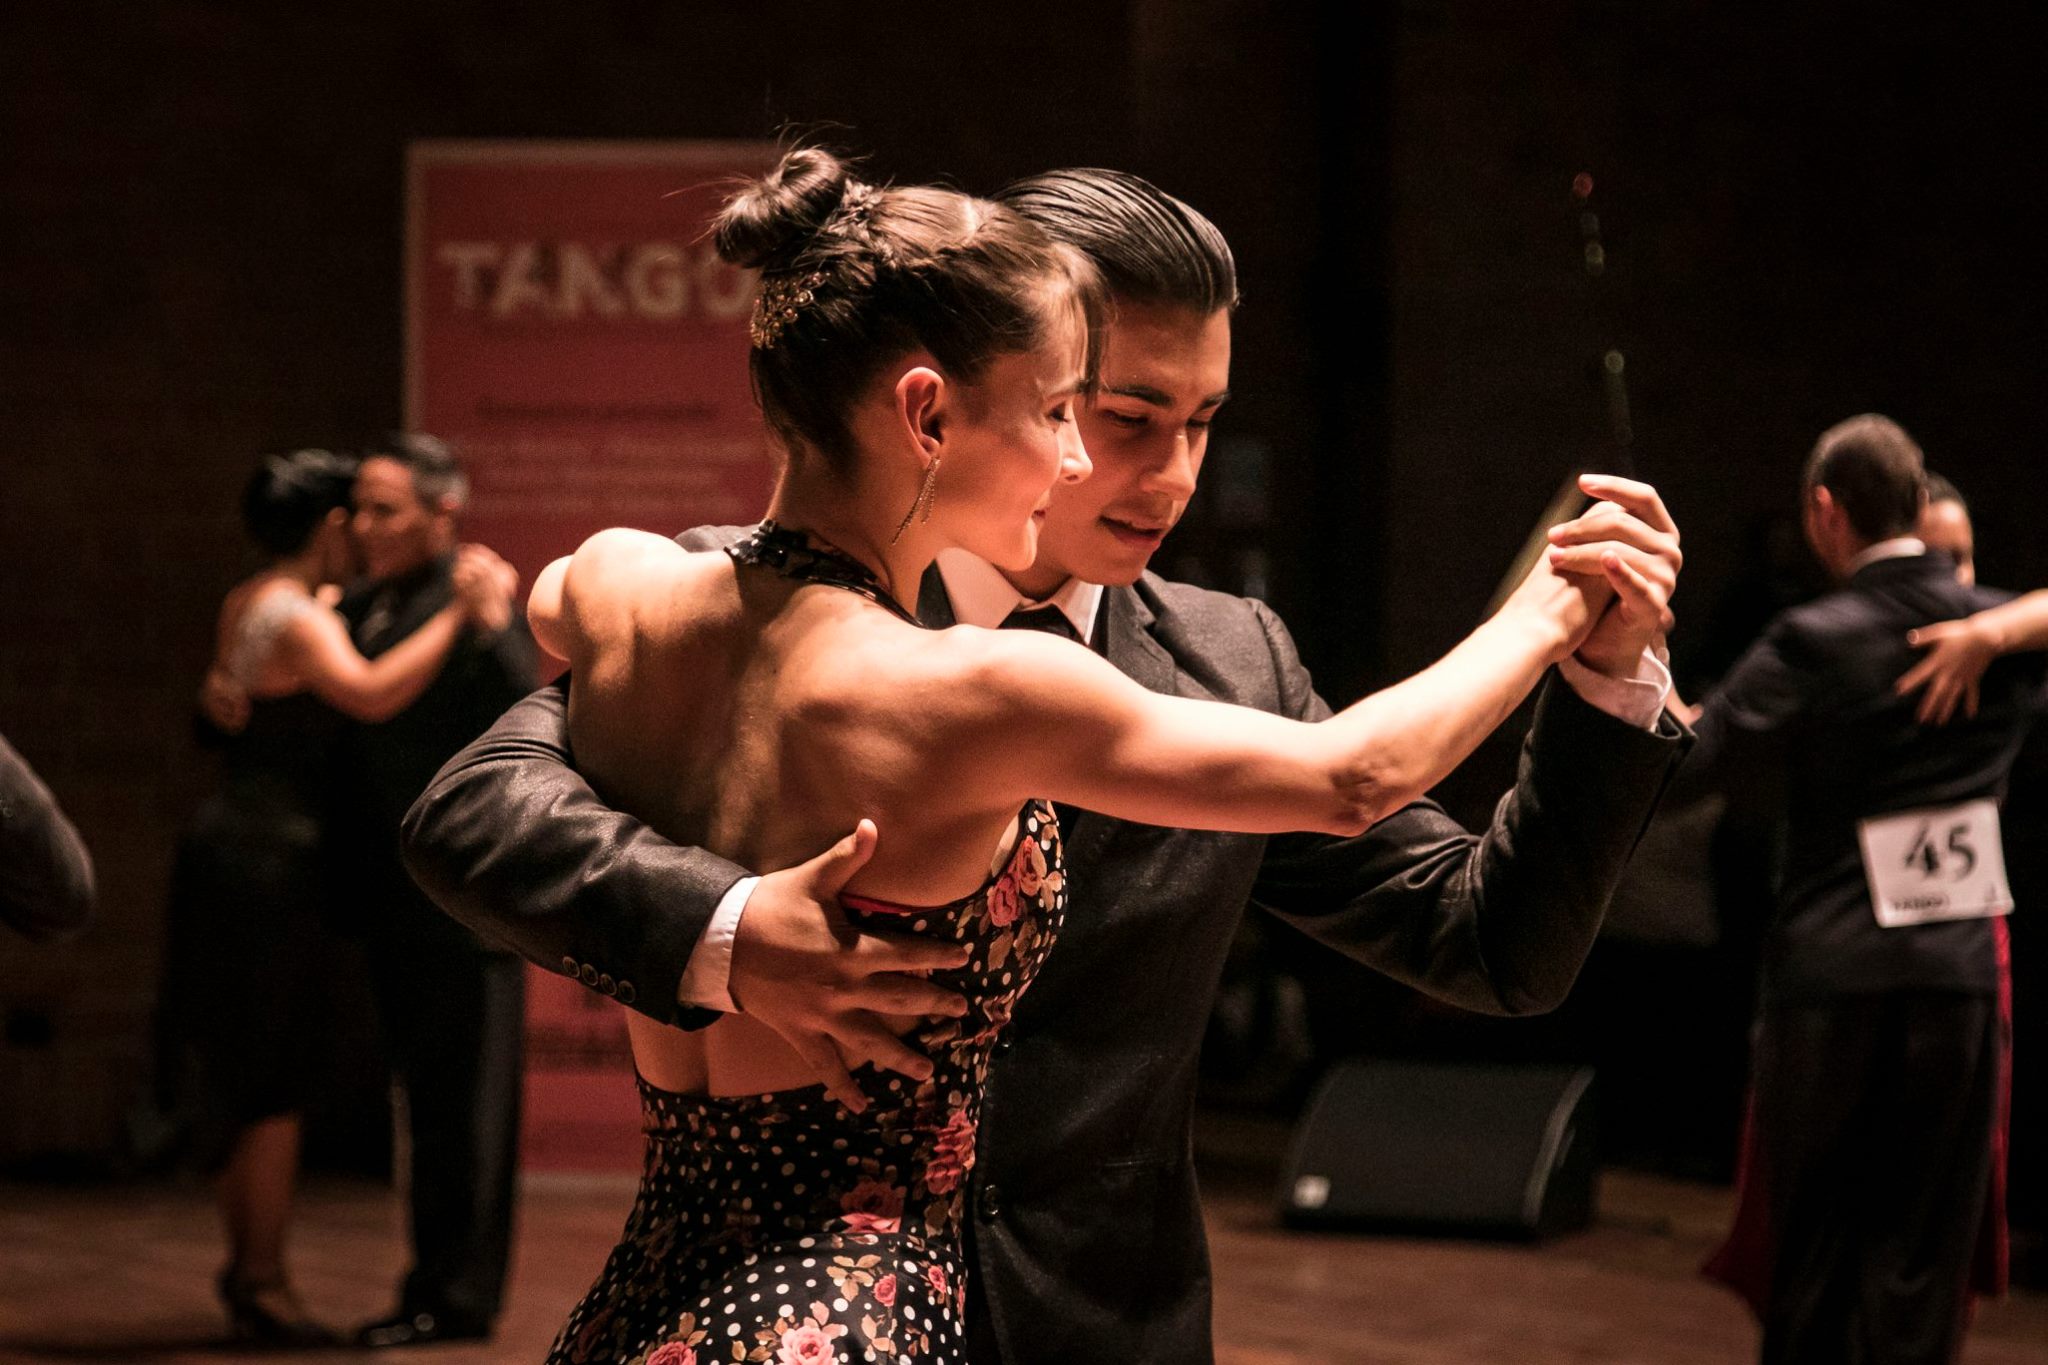 El Evento Que Afirma A Medellín Como Capital Mundial Del Tango